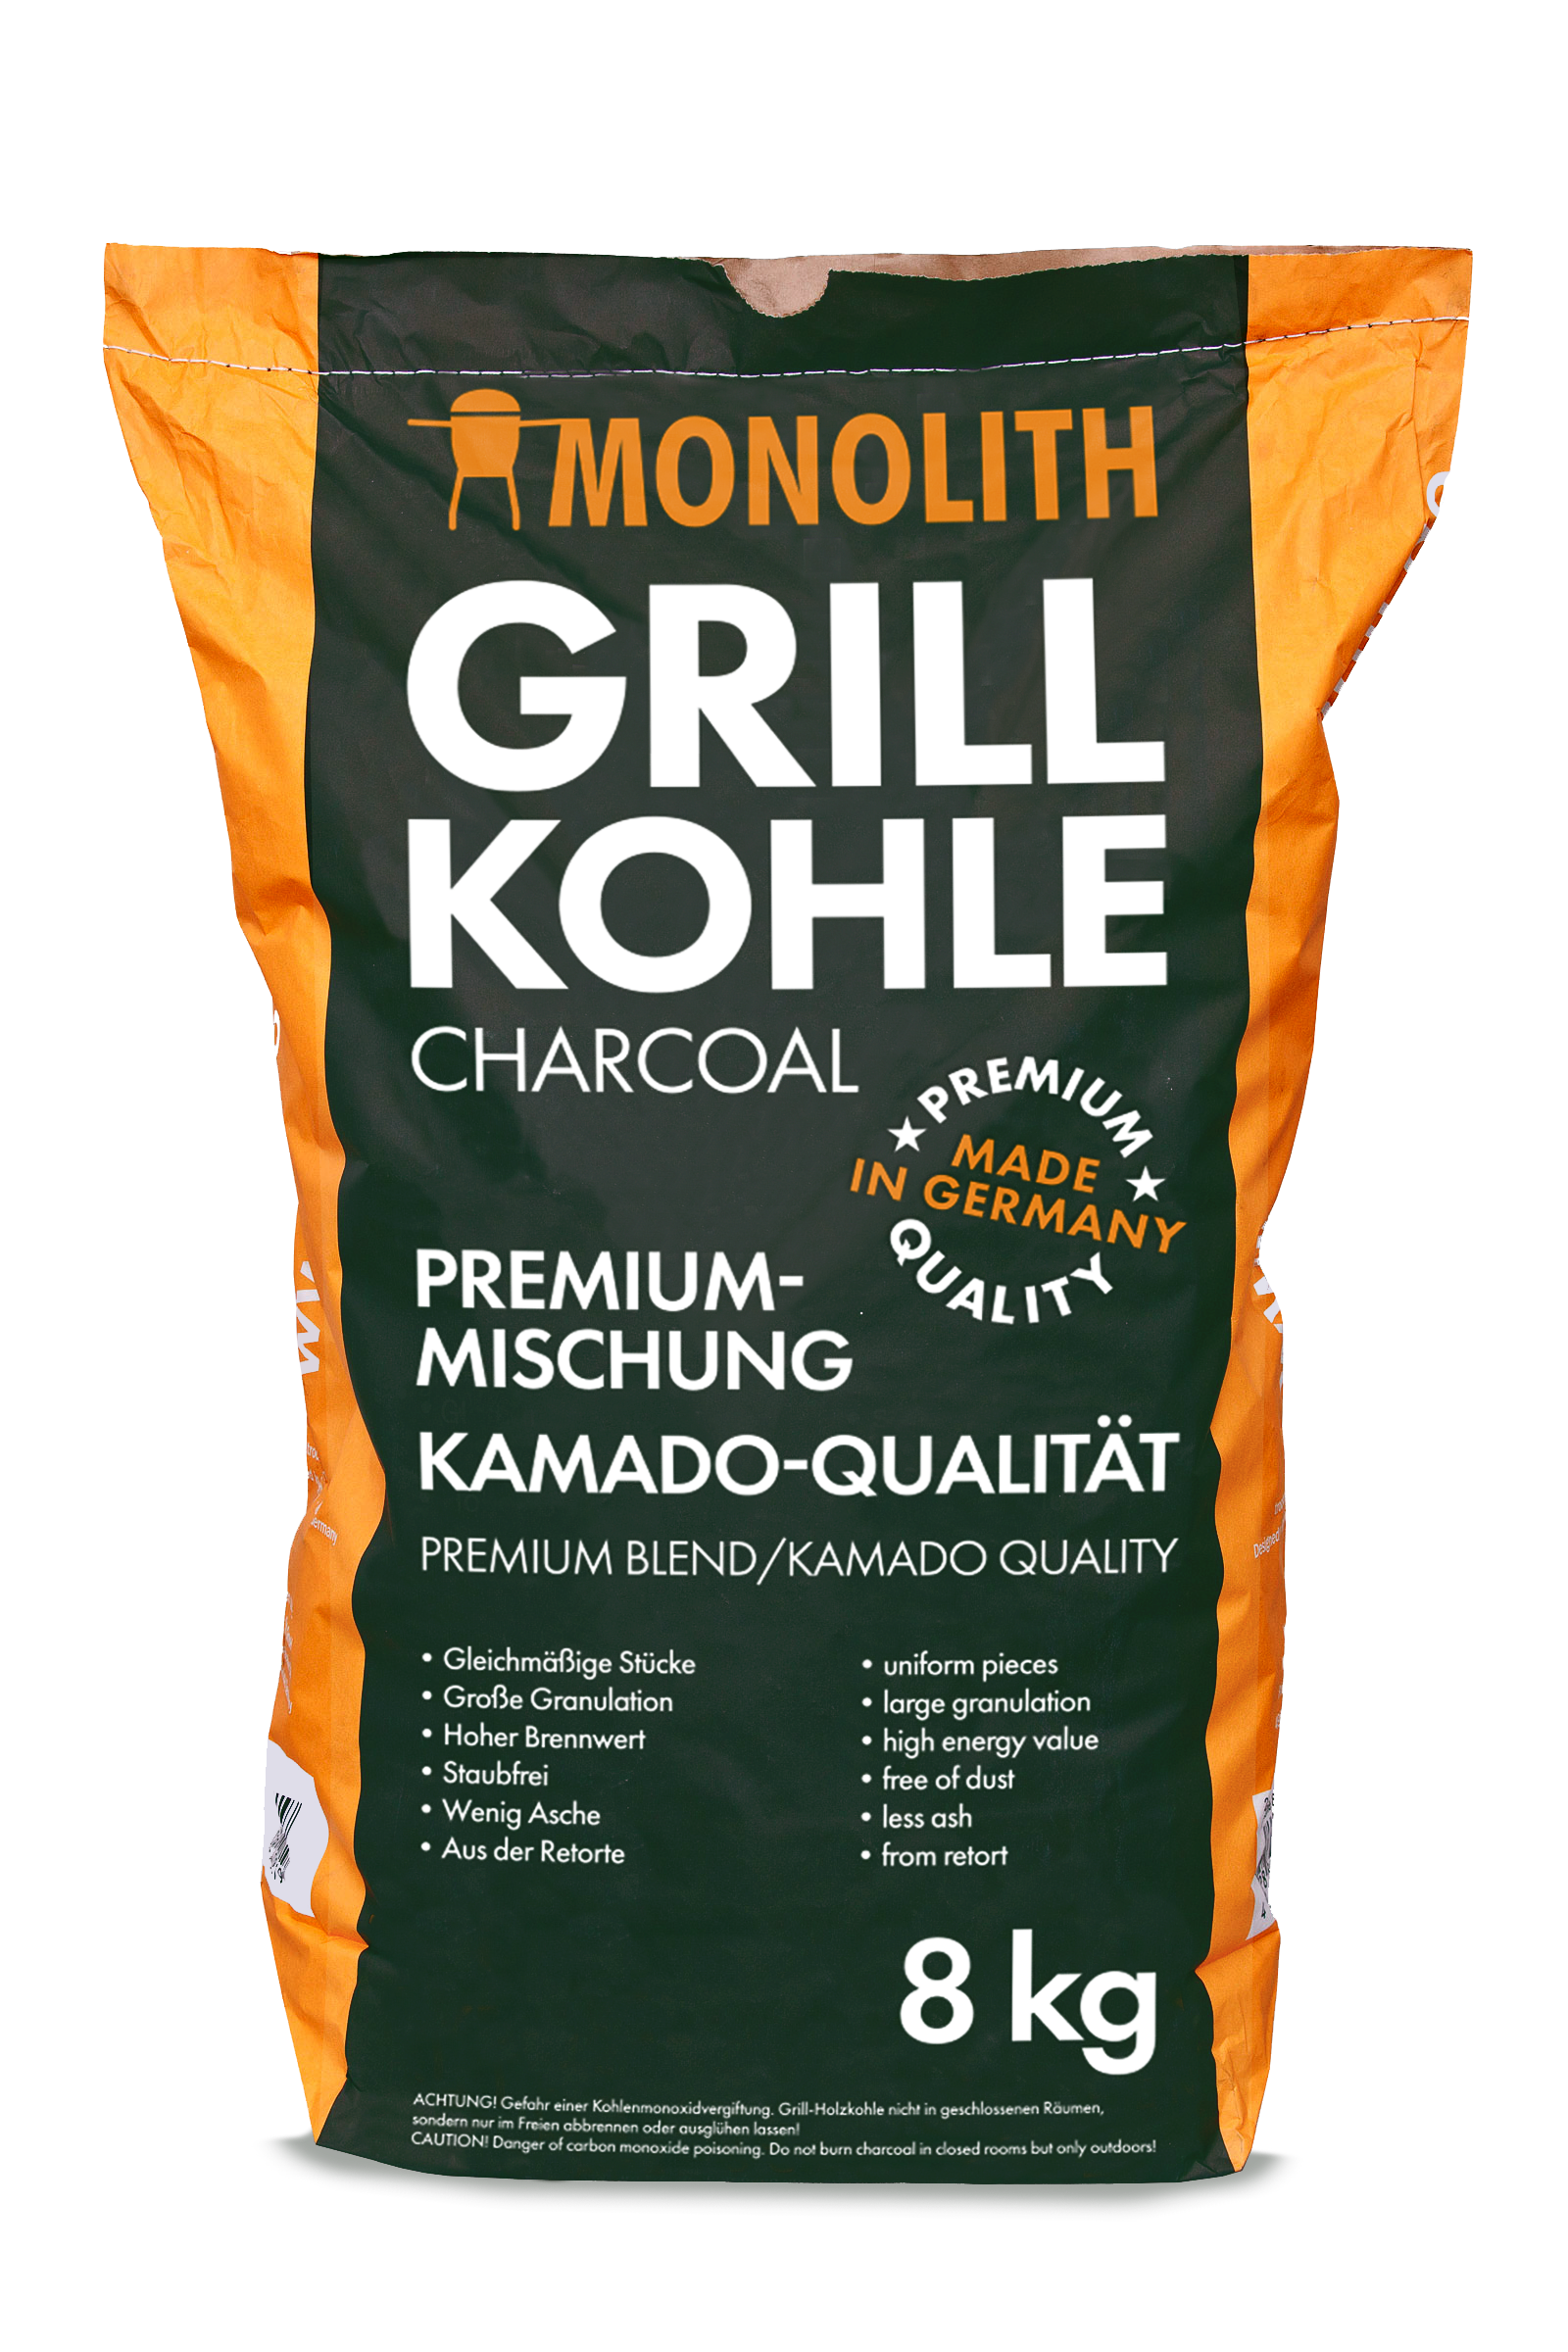 Für das richtige Grillen lohnt es sich in eine hochwertige Grillkohle wie die von MONOLITH zu investieren. 